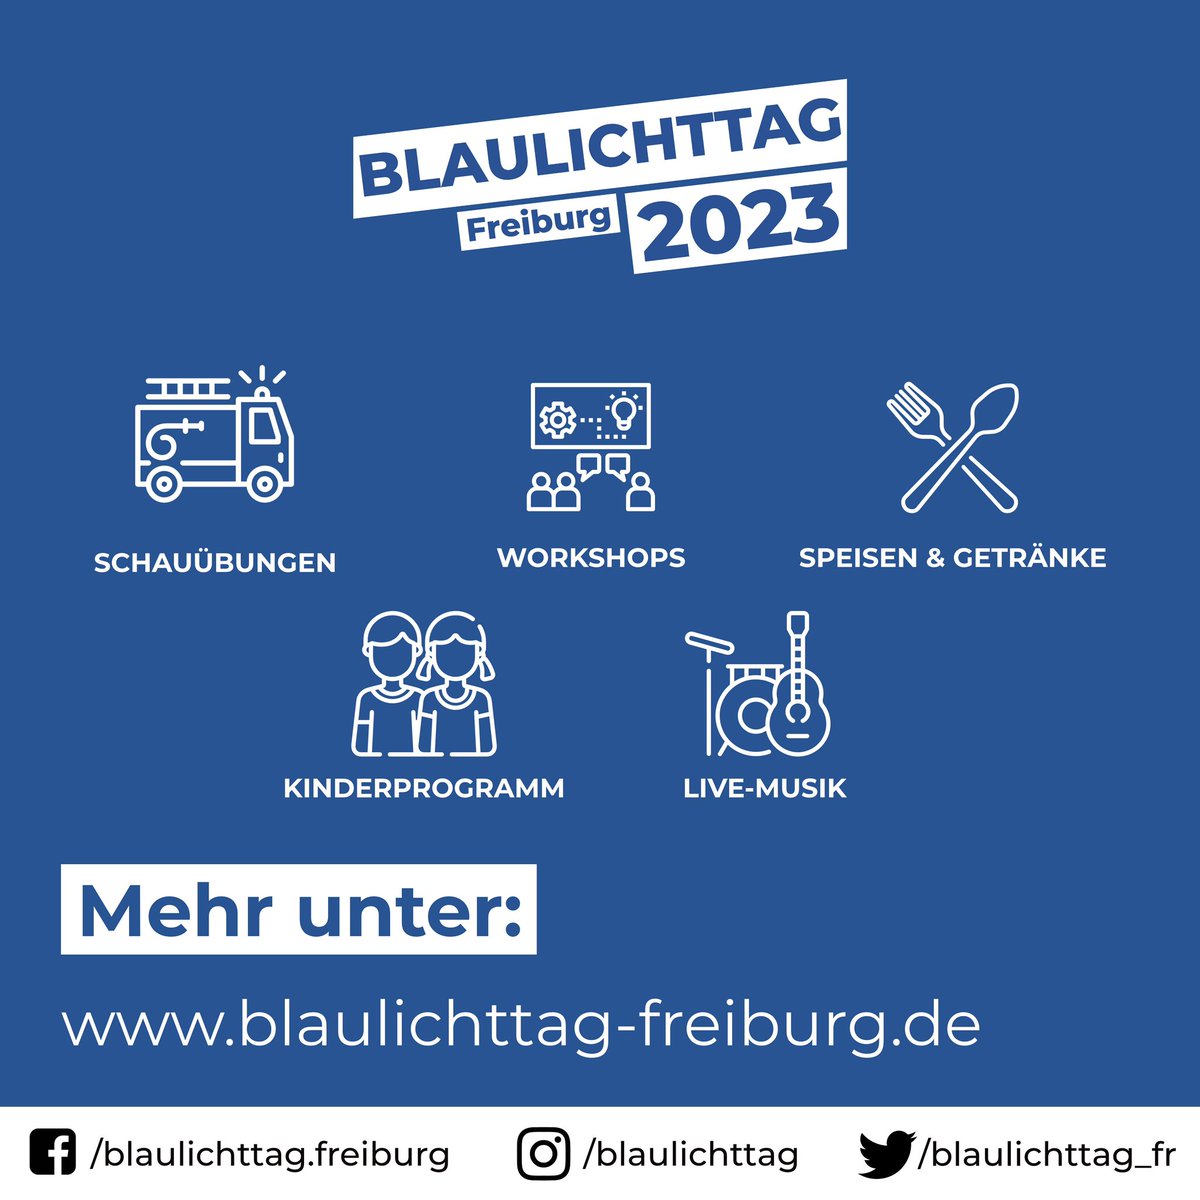 Blaulichttag Freiburg 2023
24.06.2023 10:00 - 23:00 Uhr
Urachstraße 5, 79102 Freiburg 

Mehr unter:
blaulichttag-freiburg.de

#blaulichttag #freiburg